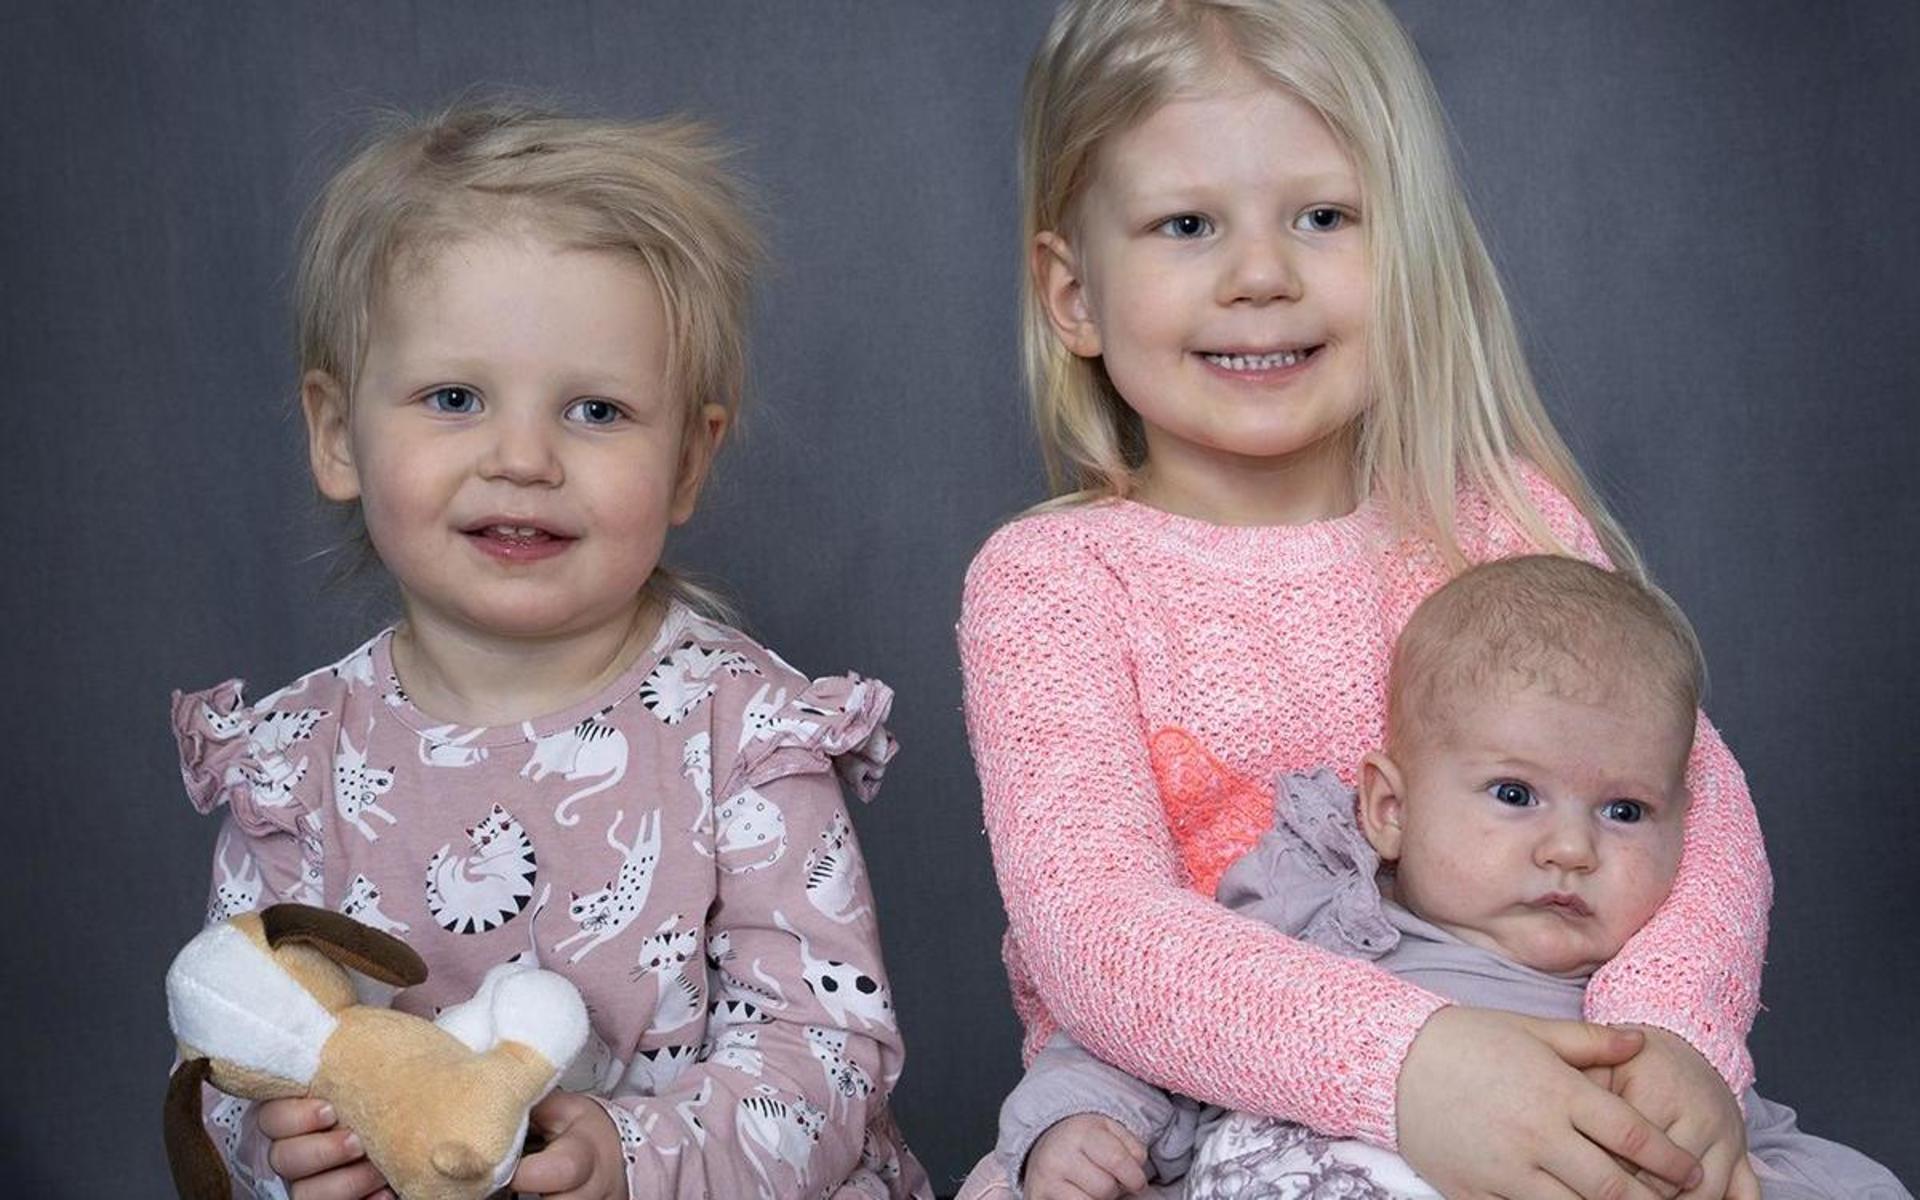 Jessica Romlin och Emil Jönsson, Laholm fick den 9 januari en flicka som heter Liv. Hon vägde 3300 g och var 49 cm lång. Syskonen heter Bianca och Hedvig.